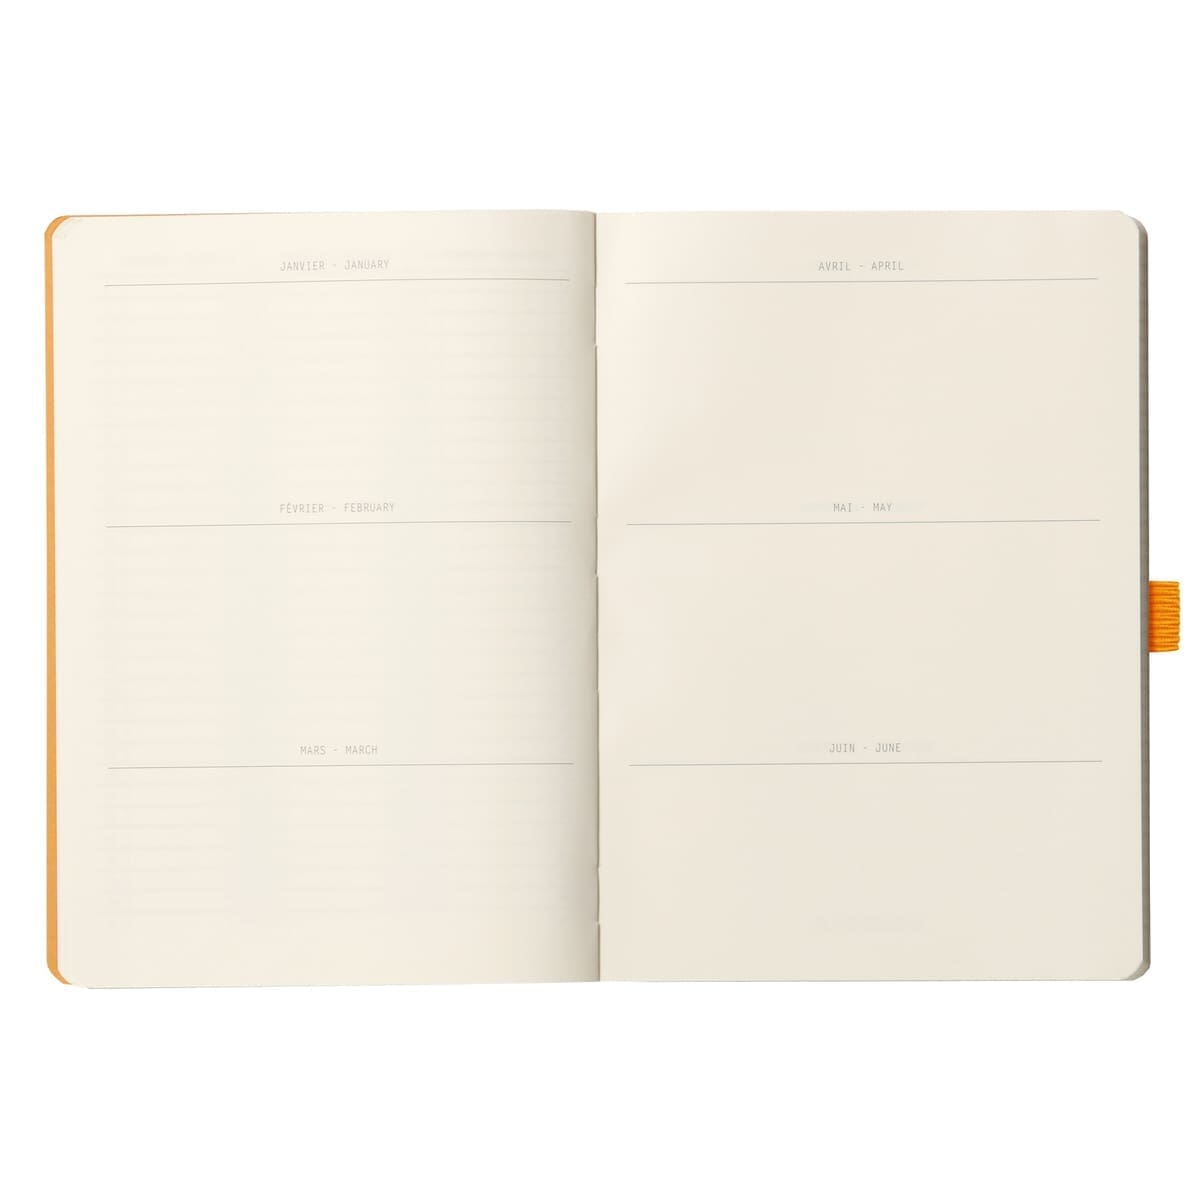 GoalBook Dotted notebook A5 - Beige - Rhodia - Tidformera